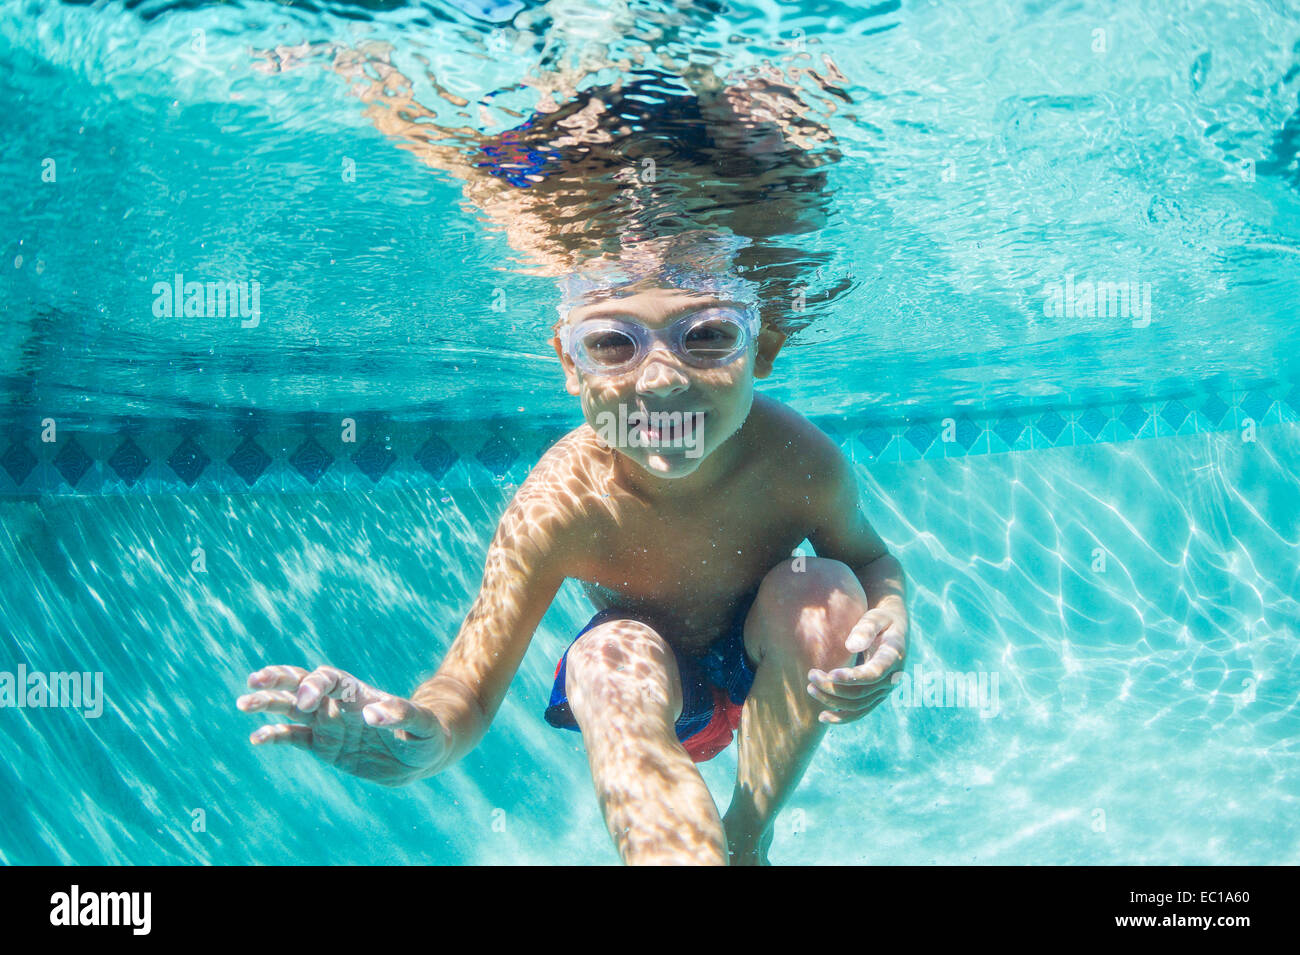 Underwater chico divertido en la piscina con gafas. Divertidas vacaciones de verano. Foto de stock